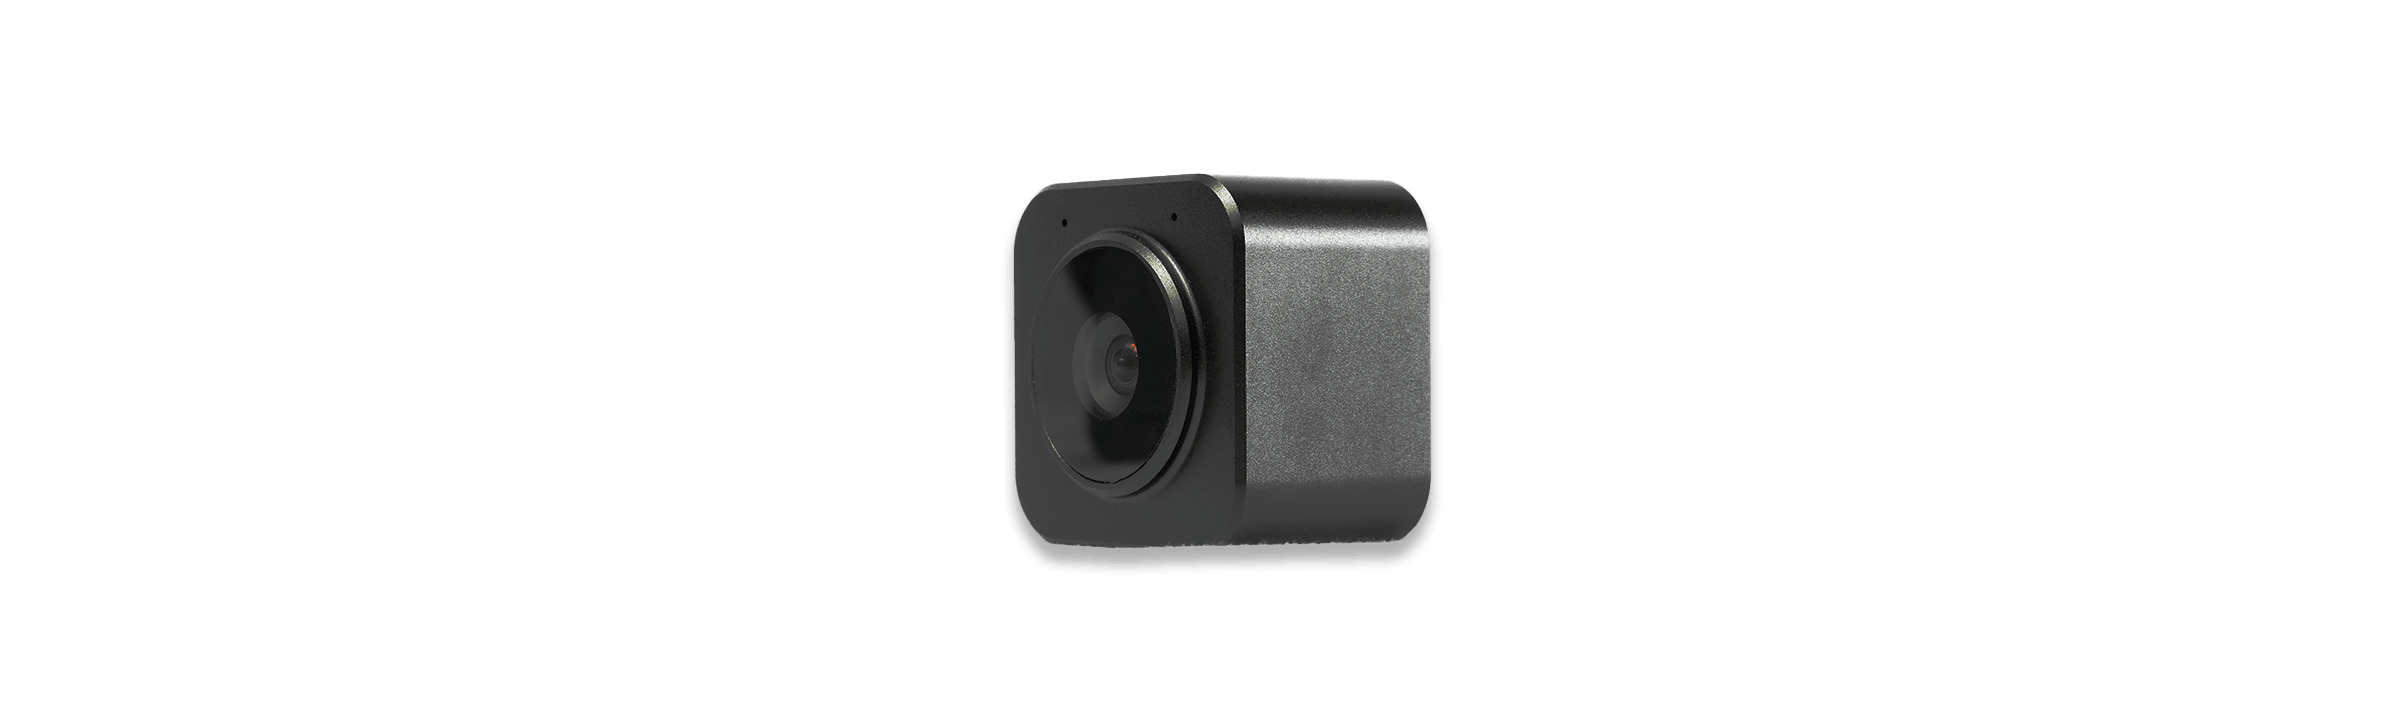 BlackCam autofocus camera for BlackBox with no background